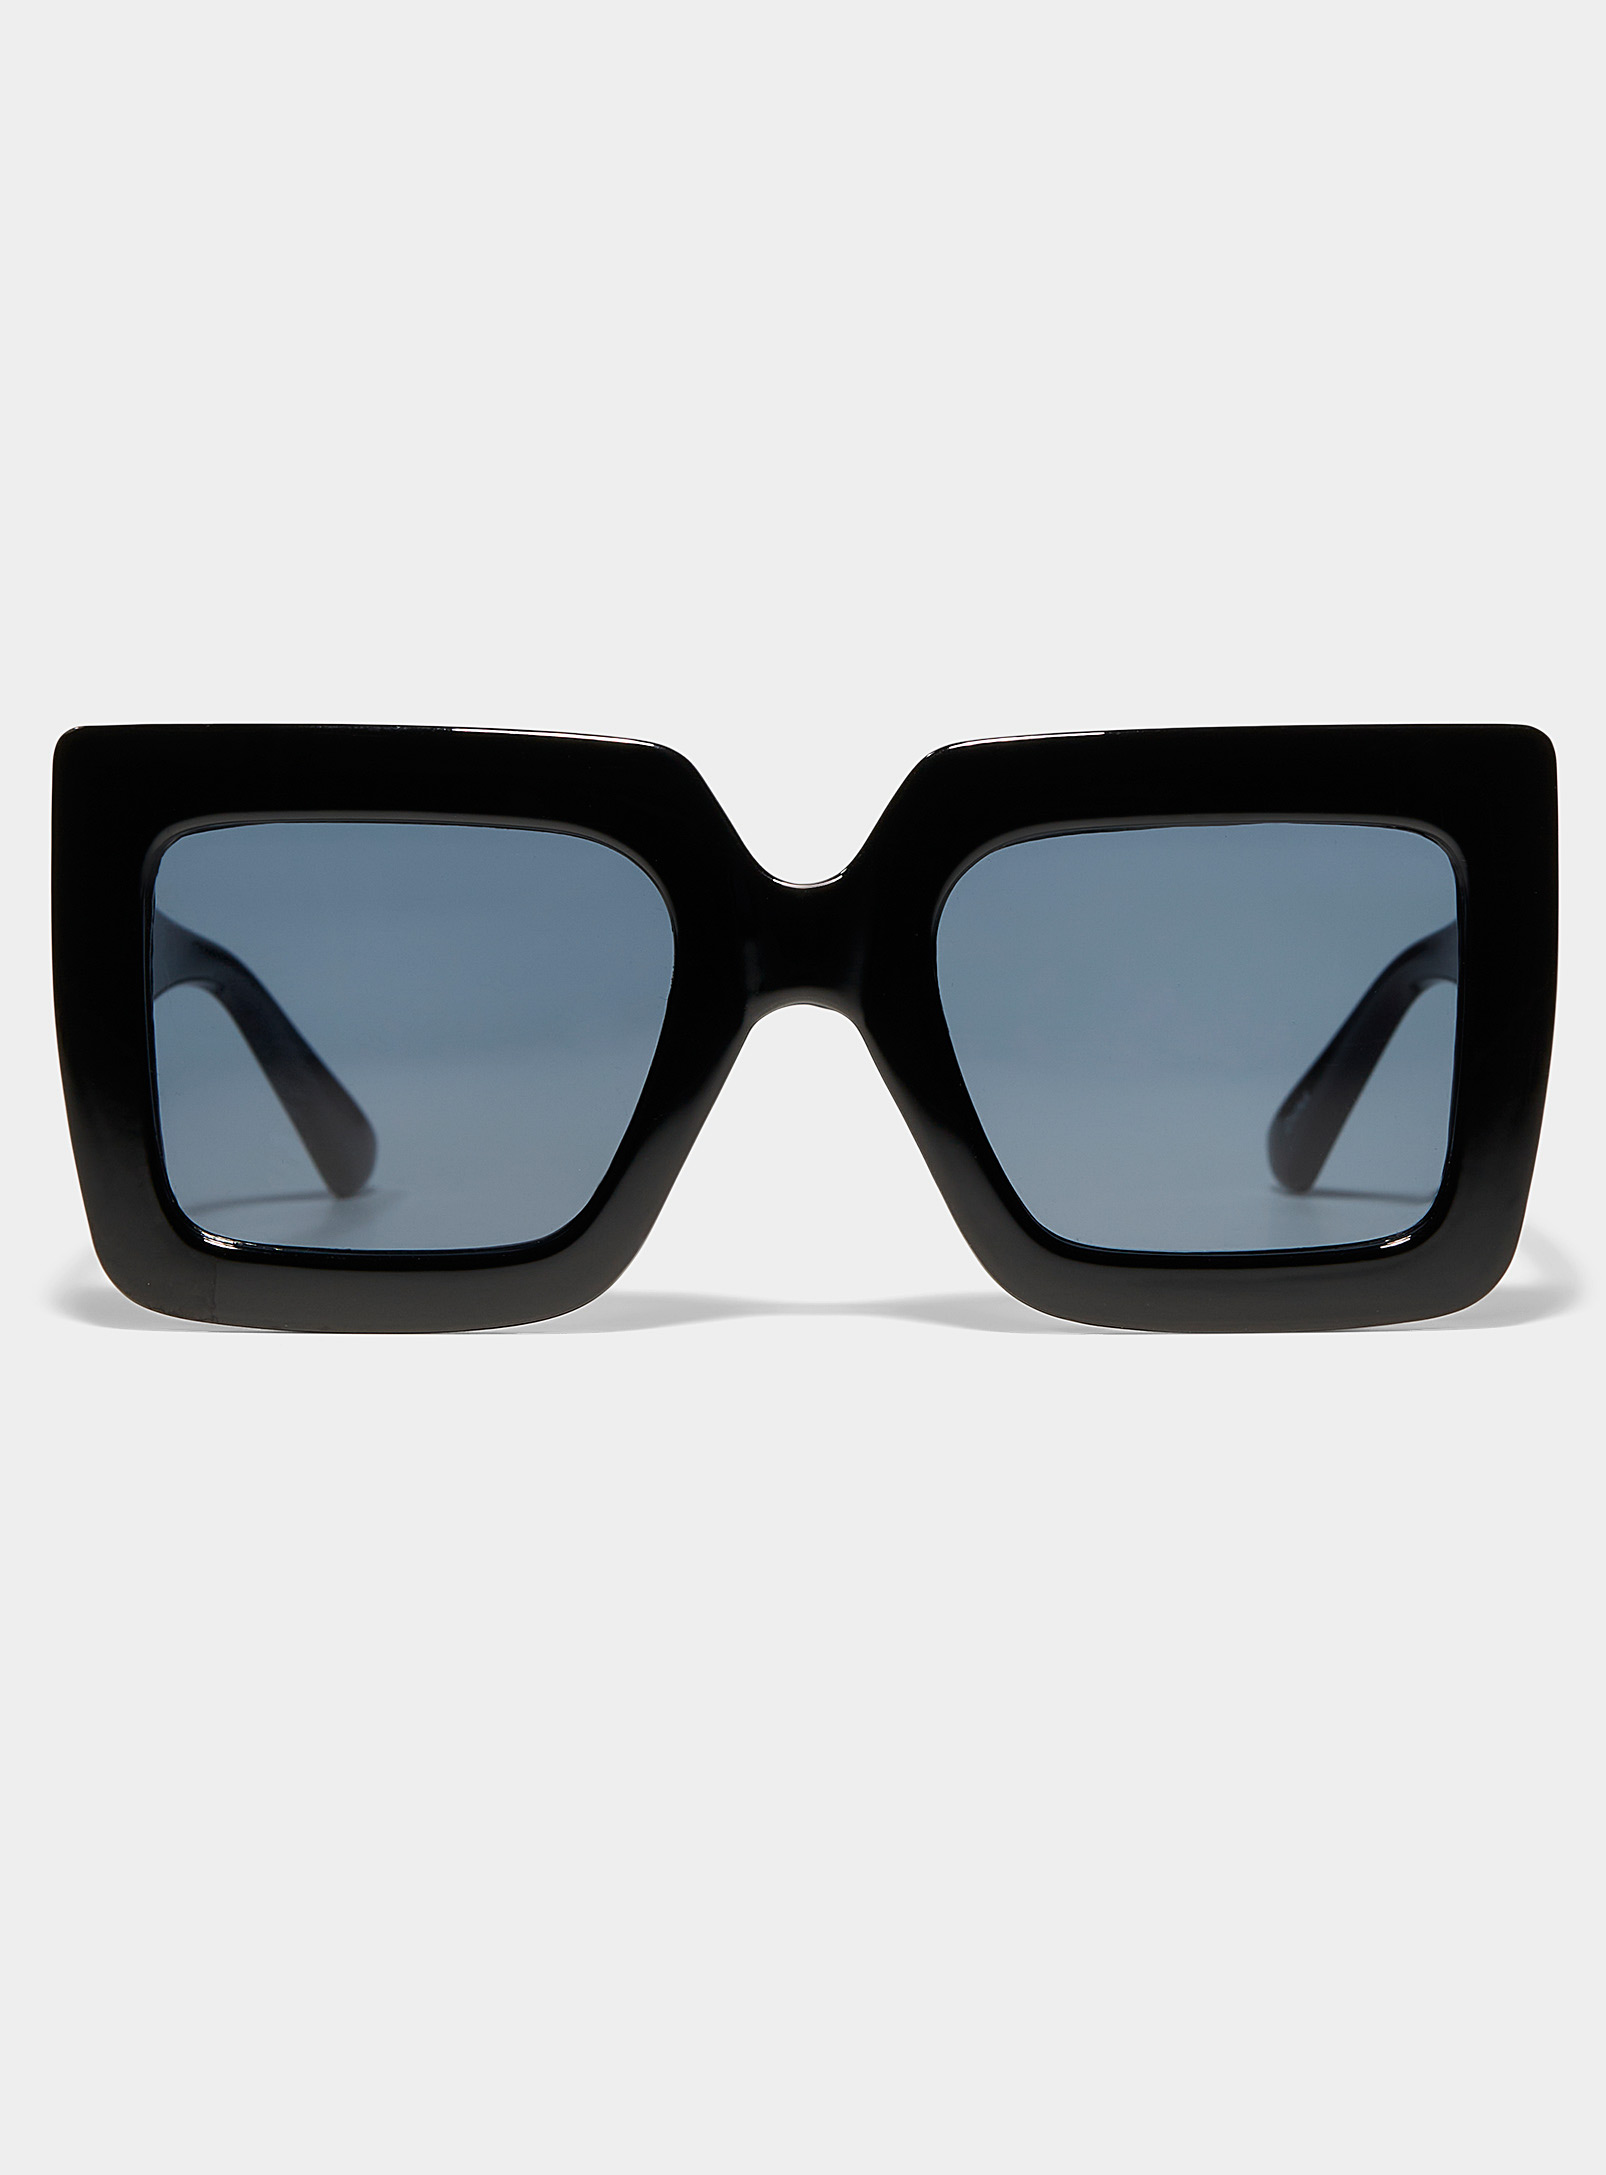 Simons - Les lunettes de soleil carrées XL Lexicon